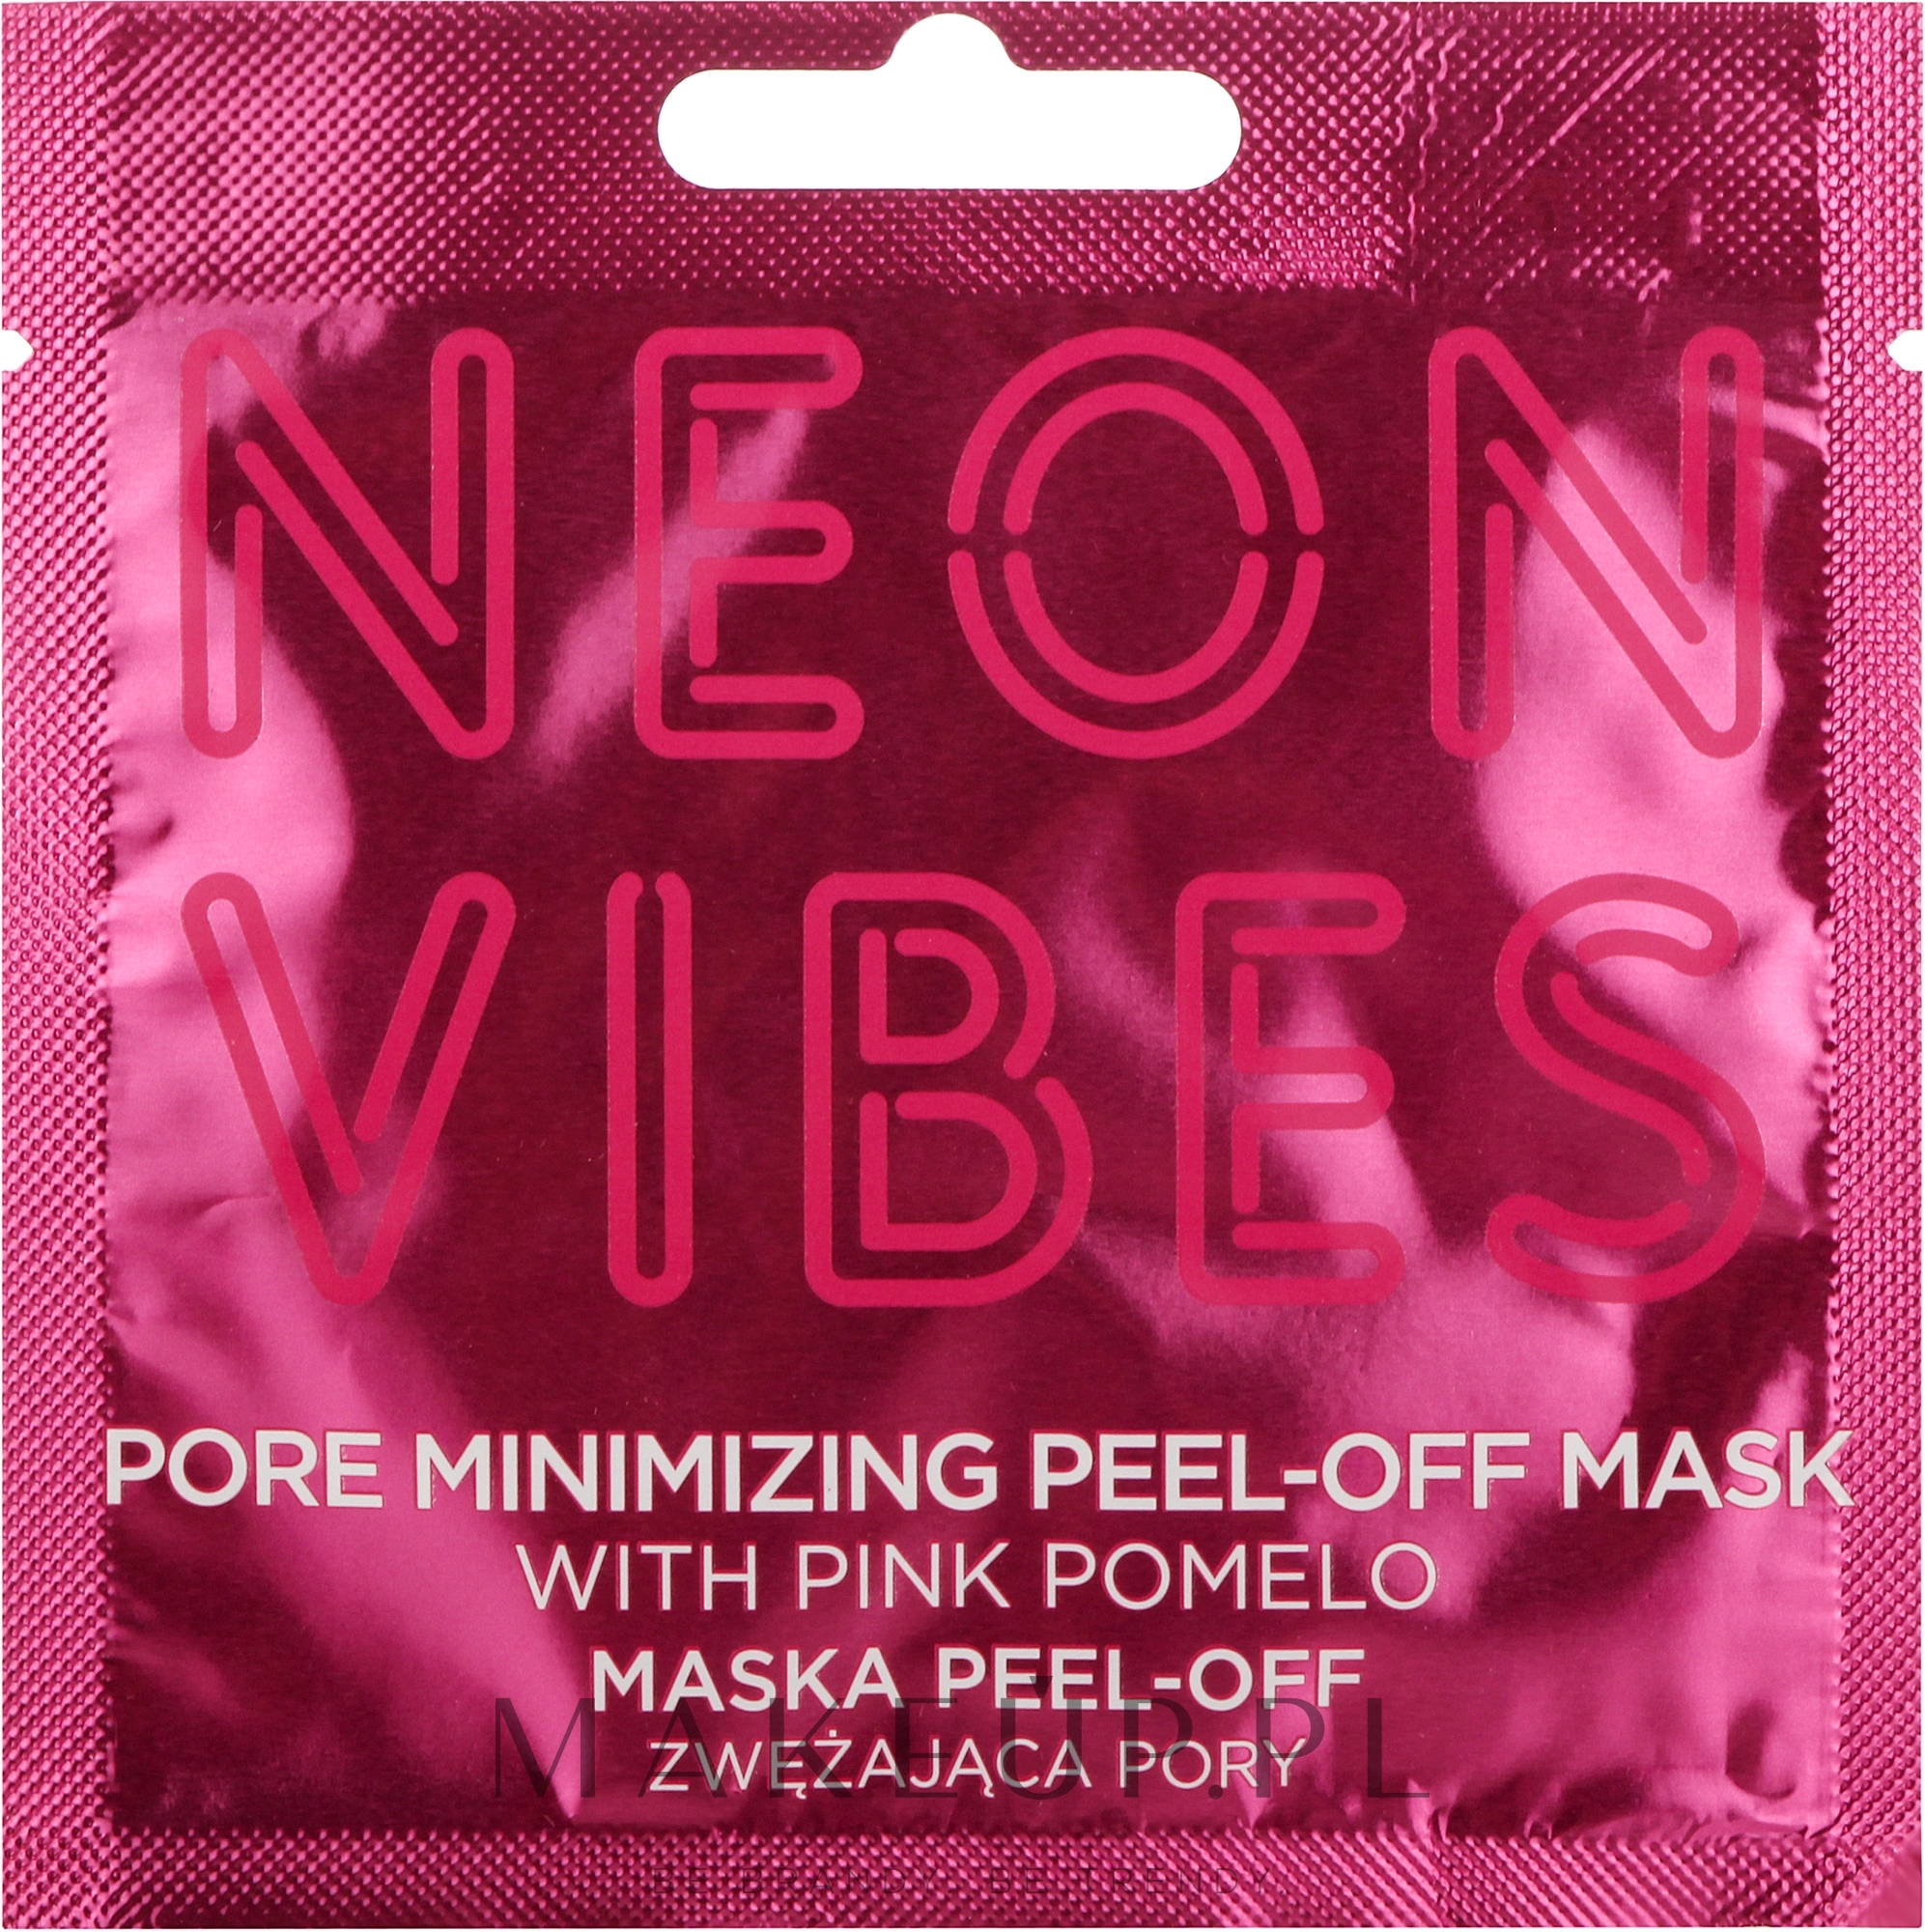 Maska peel-off do twarzy minimalizująca widoczność porów - Marion Neon Vibes Pore Minimizing Peel-off Mask — Zdjęcie 8 g